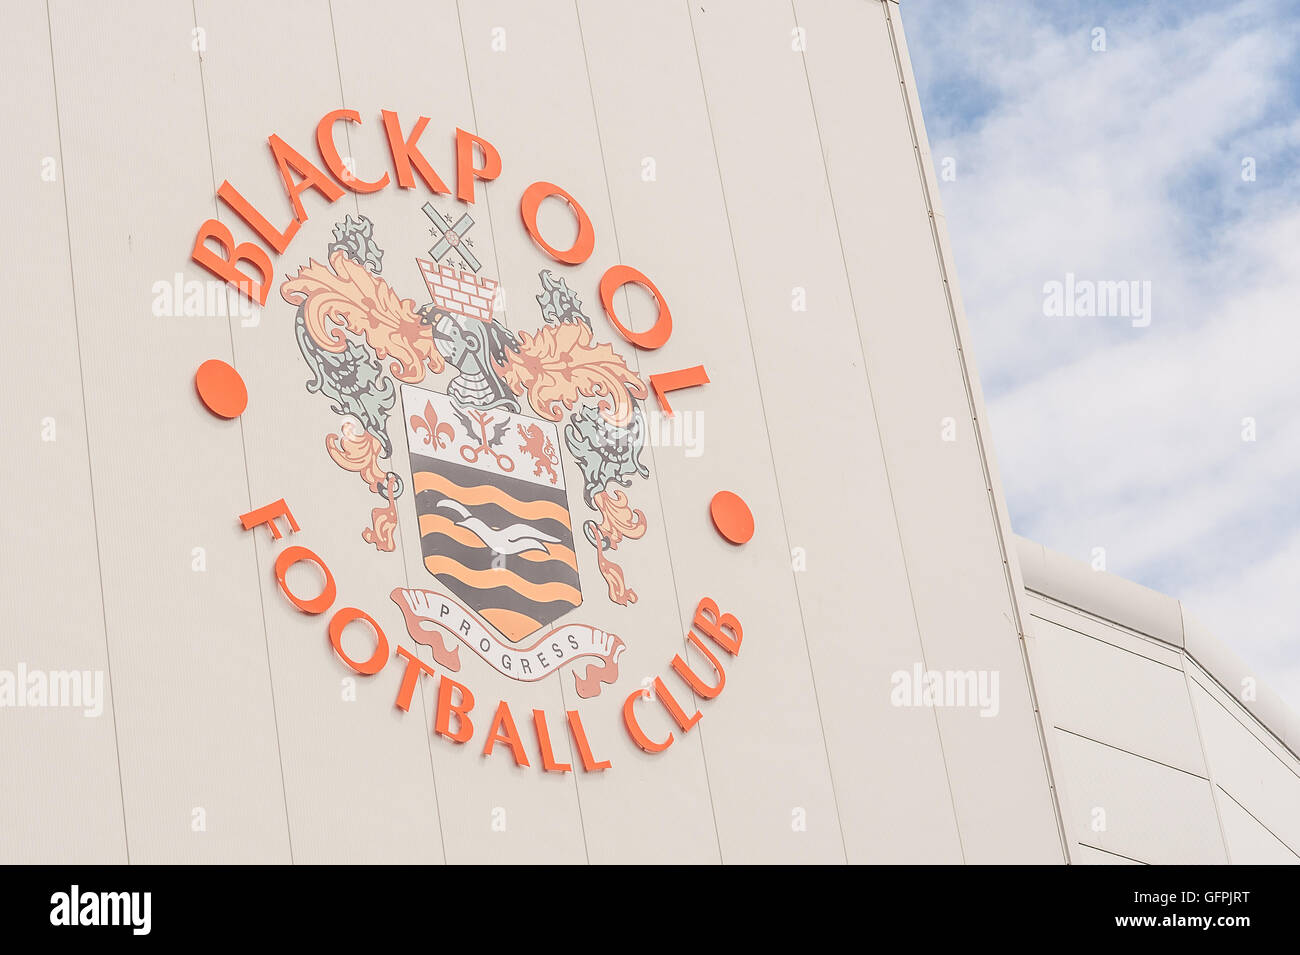 Blackpool Football Club. Bloomfield Road Stadium. Stock Photo